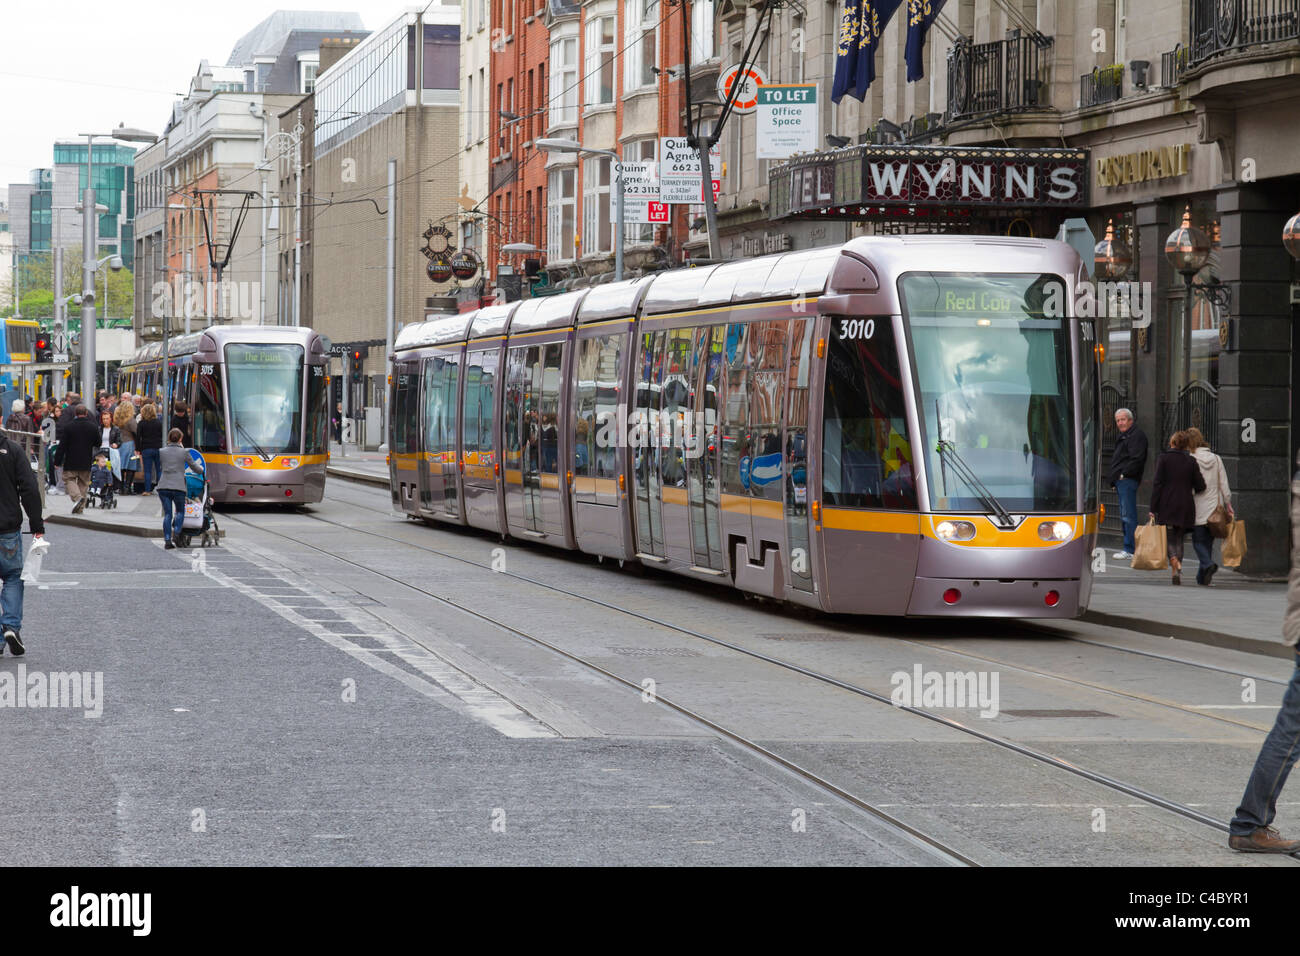 Dublin, Irland - 16. April 2011: Lokale Straßenbahn Luas, im Stadtzentrum von Dublin genannt. Viele Einheimische und Touristen können Commuti gesehen werden. Stockfoto